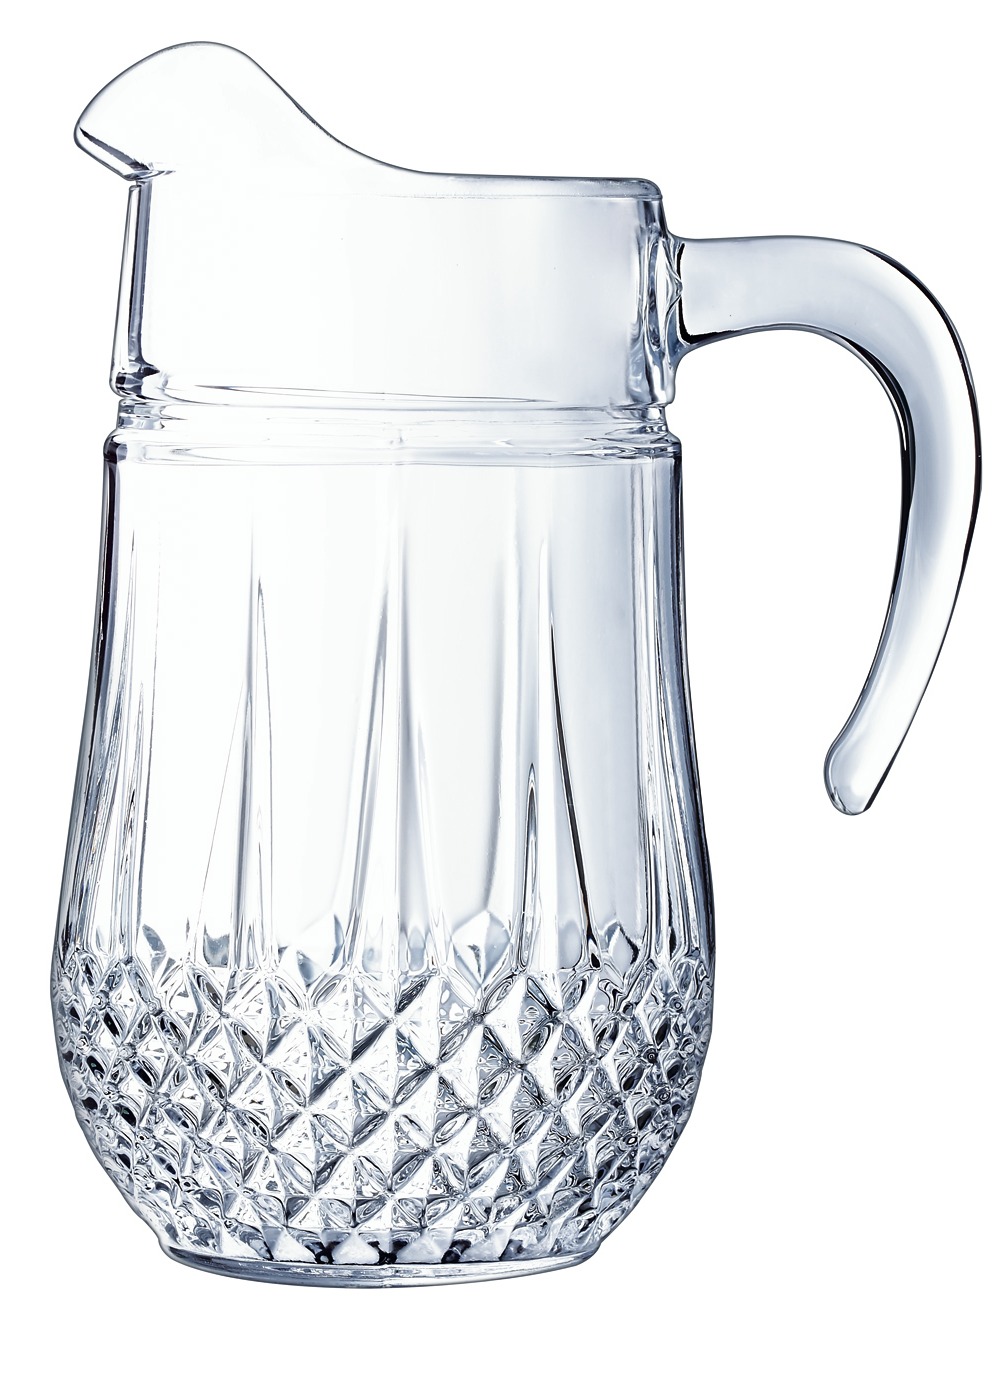 Longchamp-Glasserie aus hochwertigem Eclat-Glas